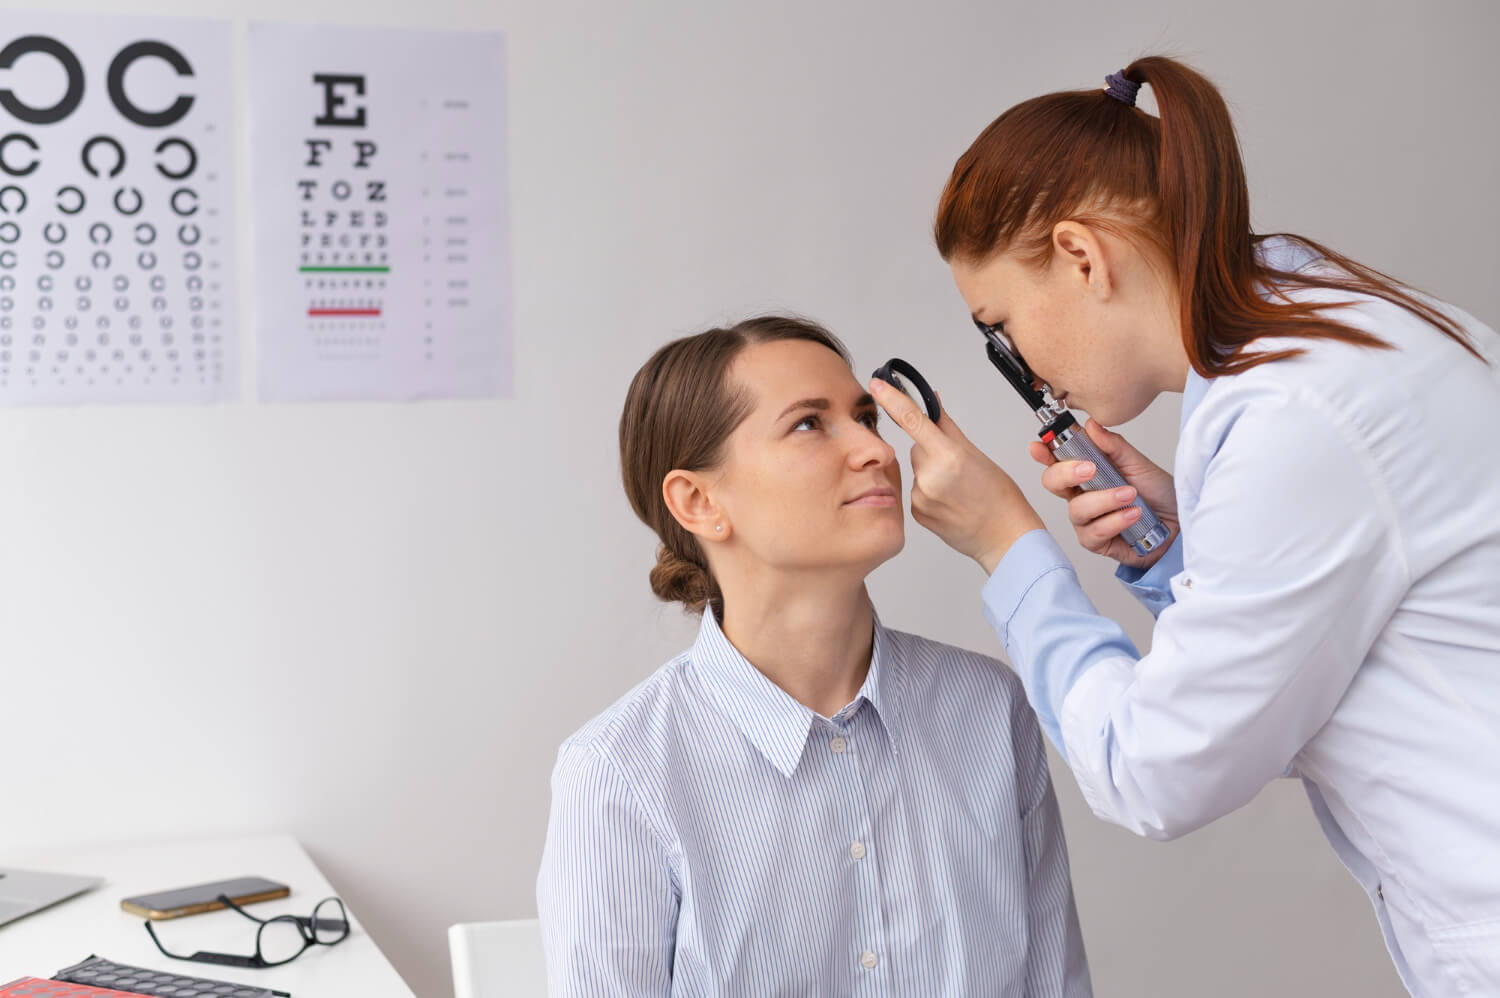 Nuestro estilo de vida puede afectar a nuestra salud ocular